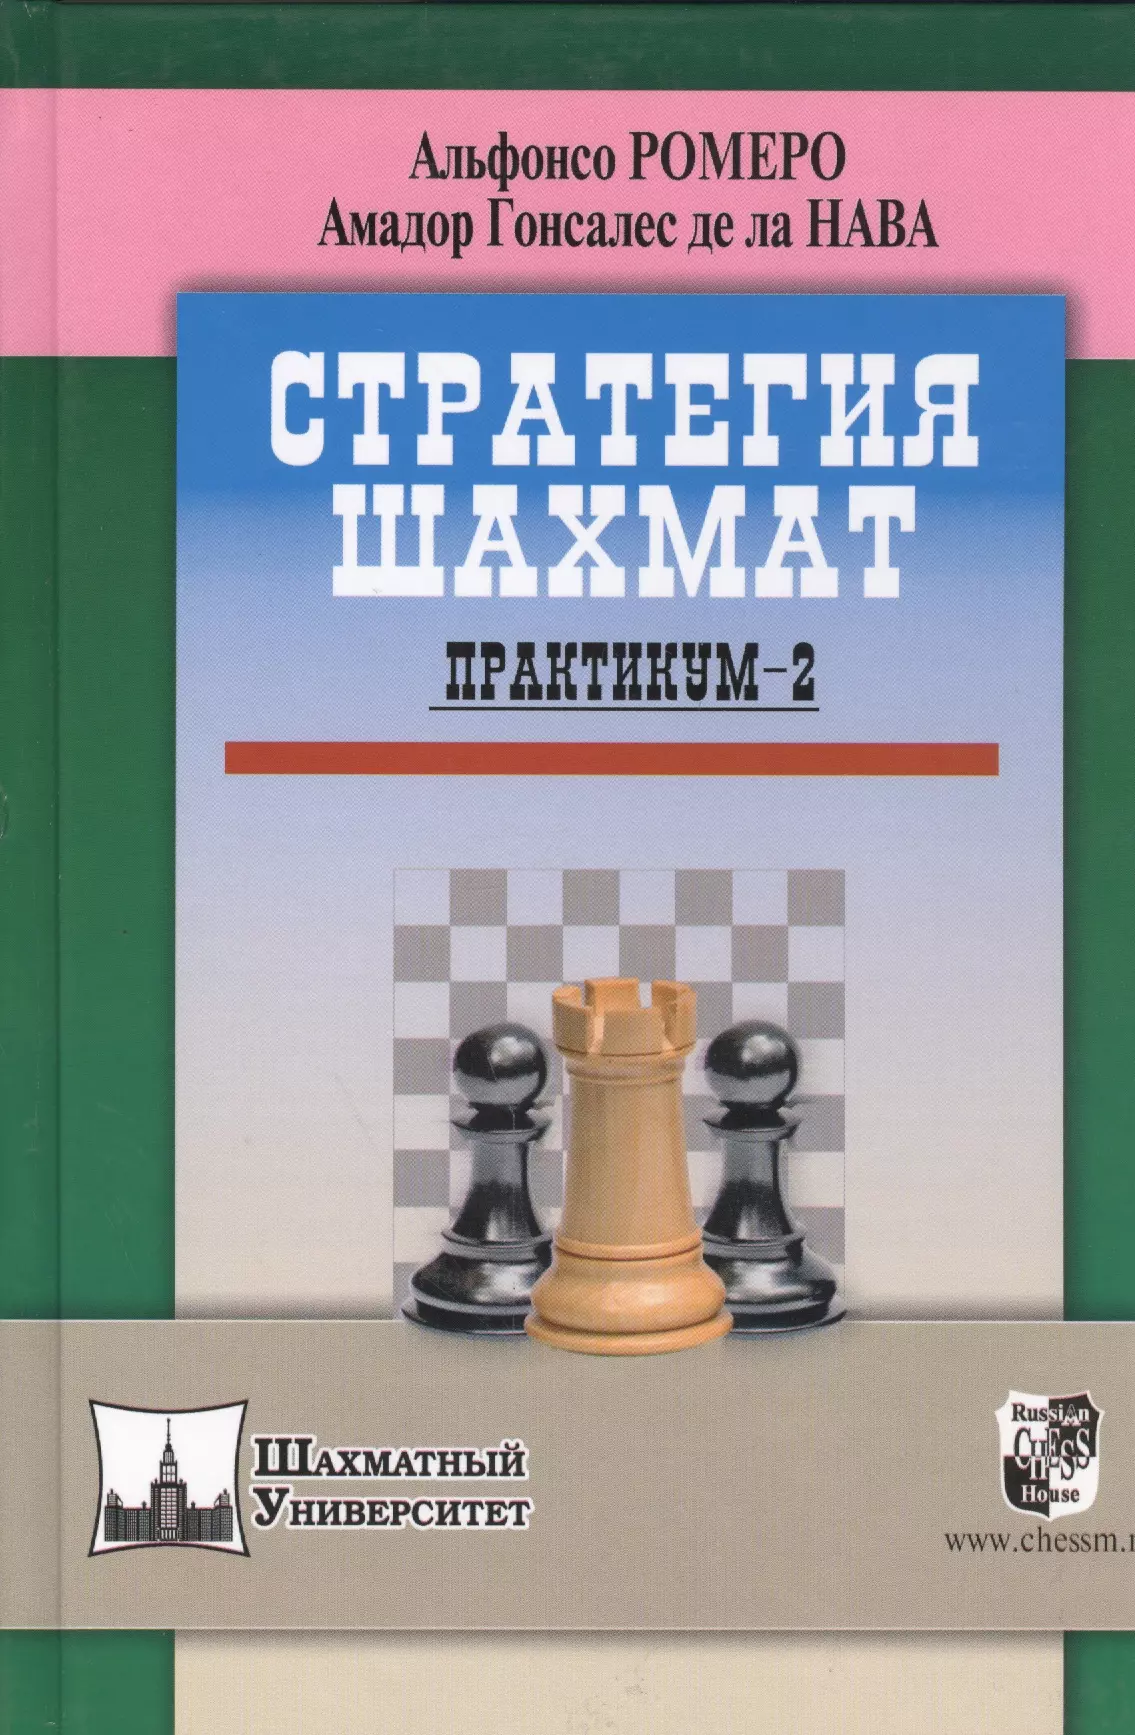 Ромеро Альфонсо Стратегия шахмат. Практикум-2 ромеро альфонсо стратегия шахмат практикум комплект из 2 книг